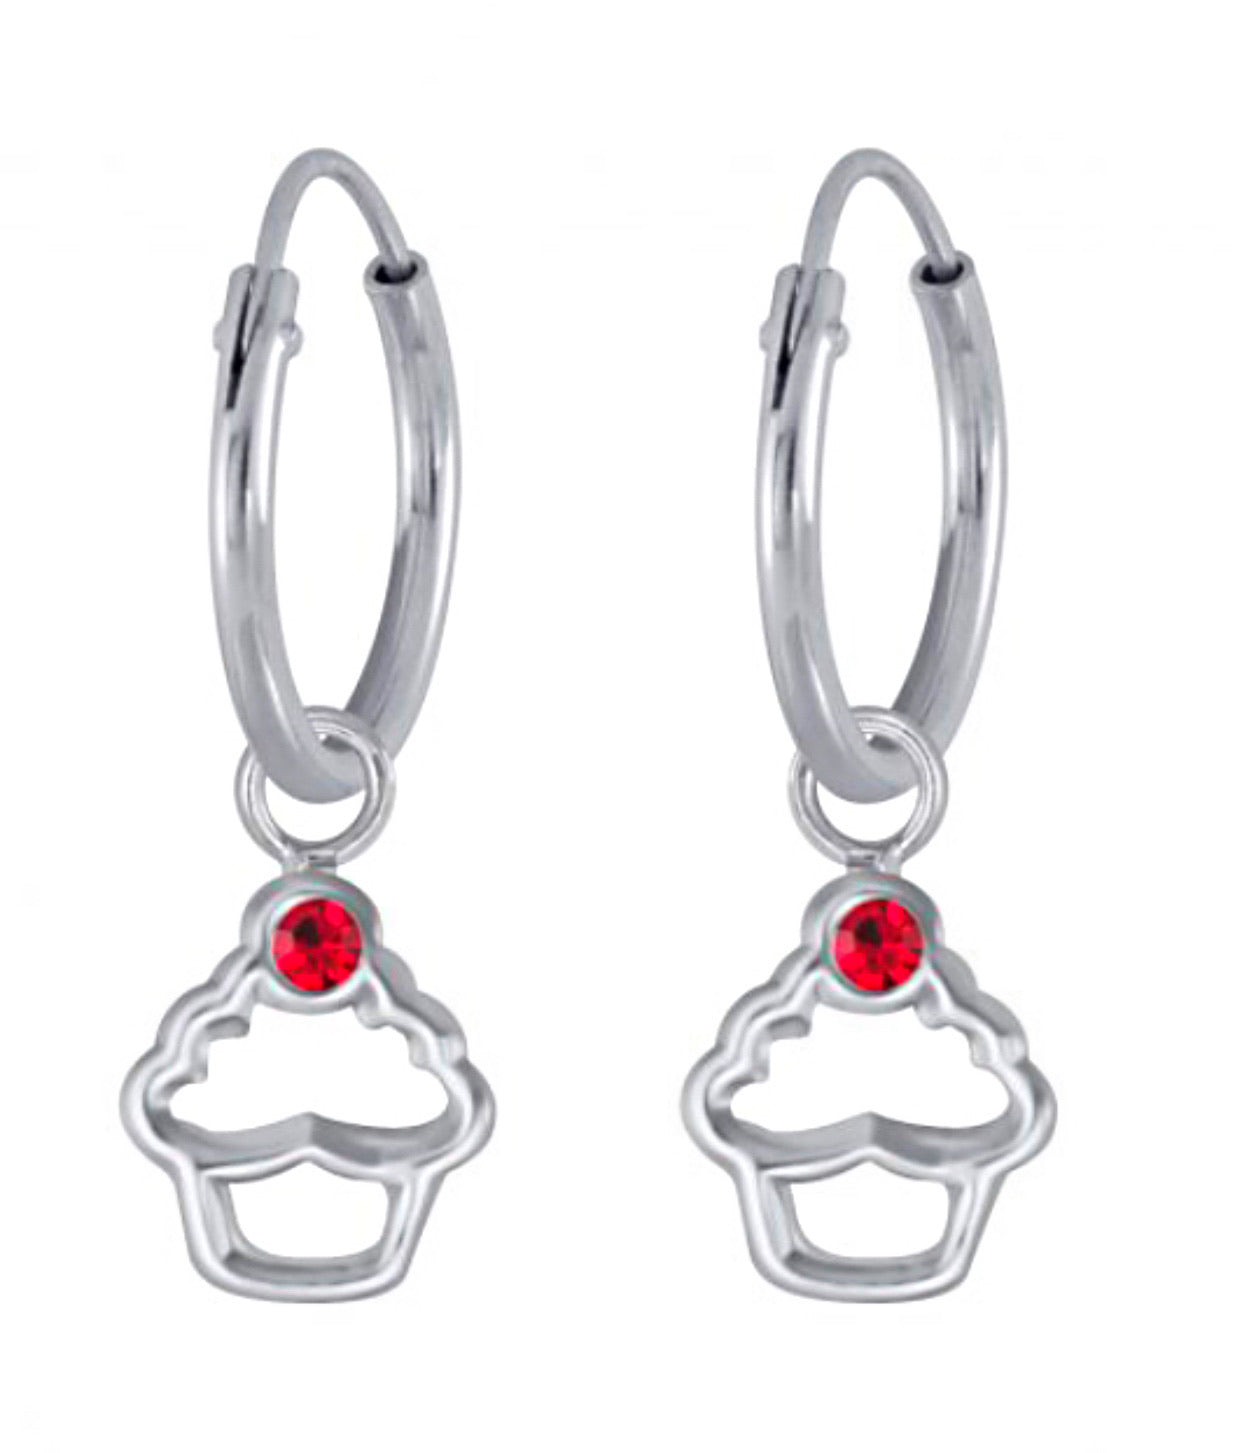 925 Sterling Silver Crystal Cupcake Hoop Earrings For Kids, Teens - Forever Kids Jewelry